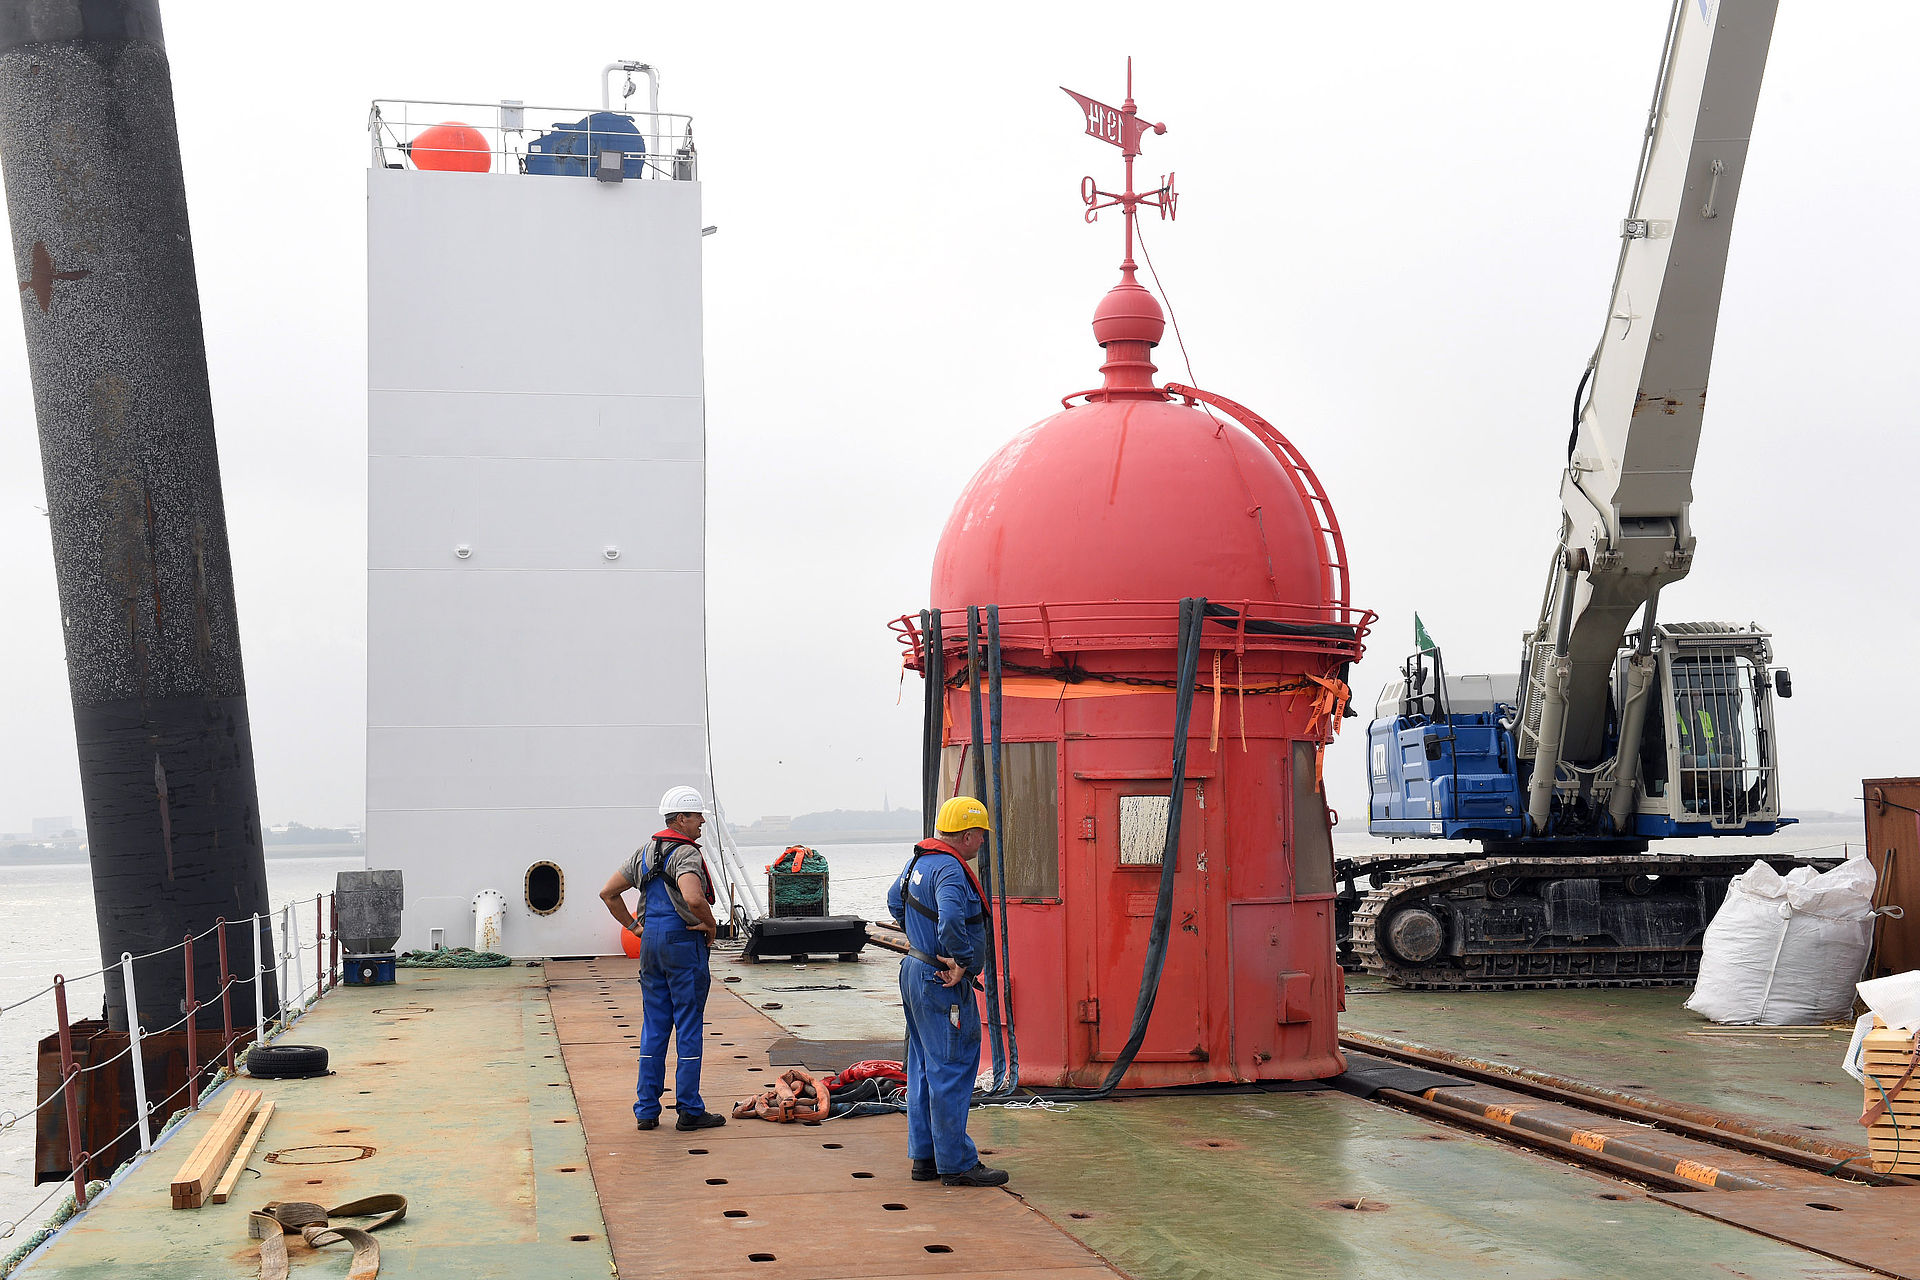 Die rote Kuppel des Molenturms auf Deck eines Schiffes. Davor Arbeiter mit gelben Helmen